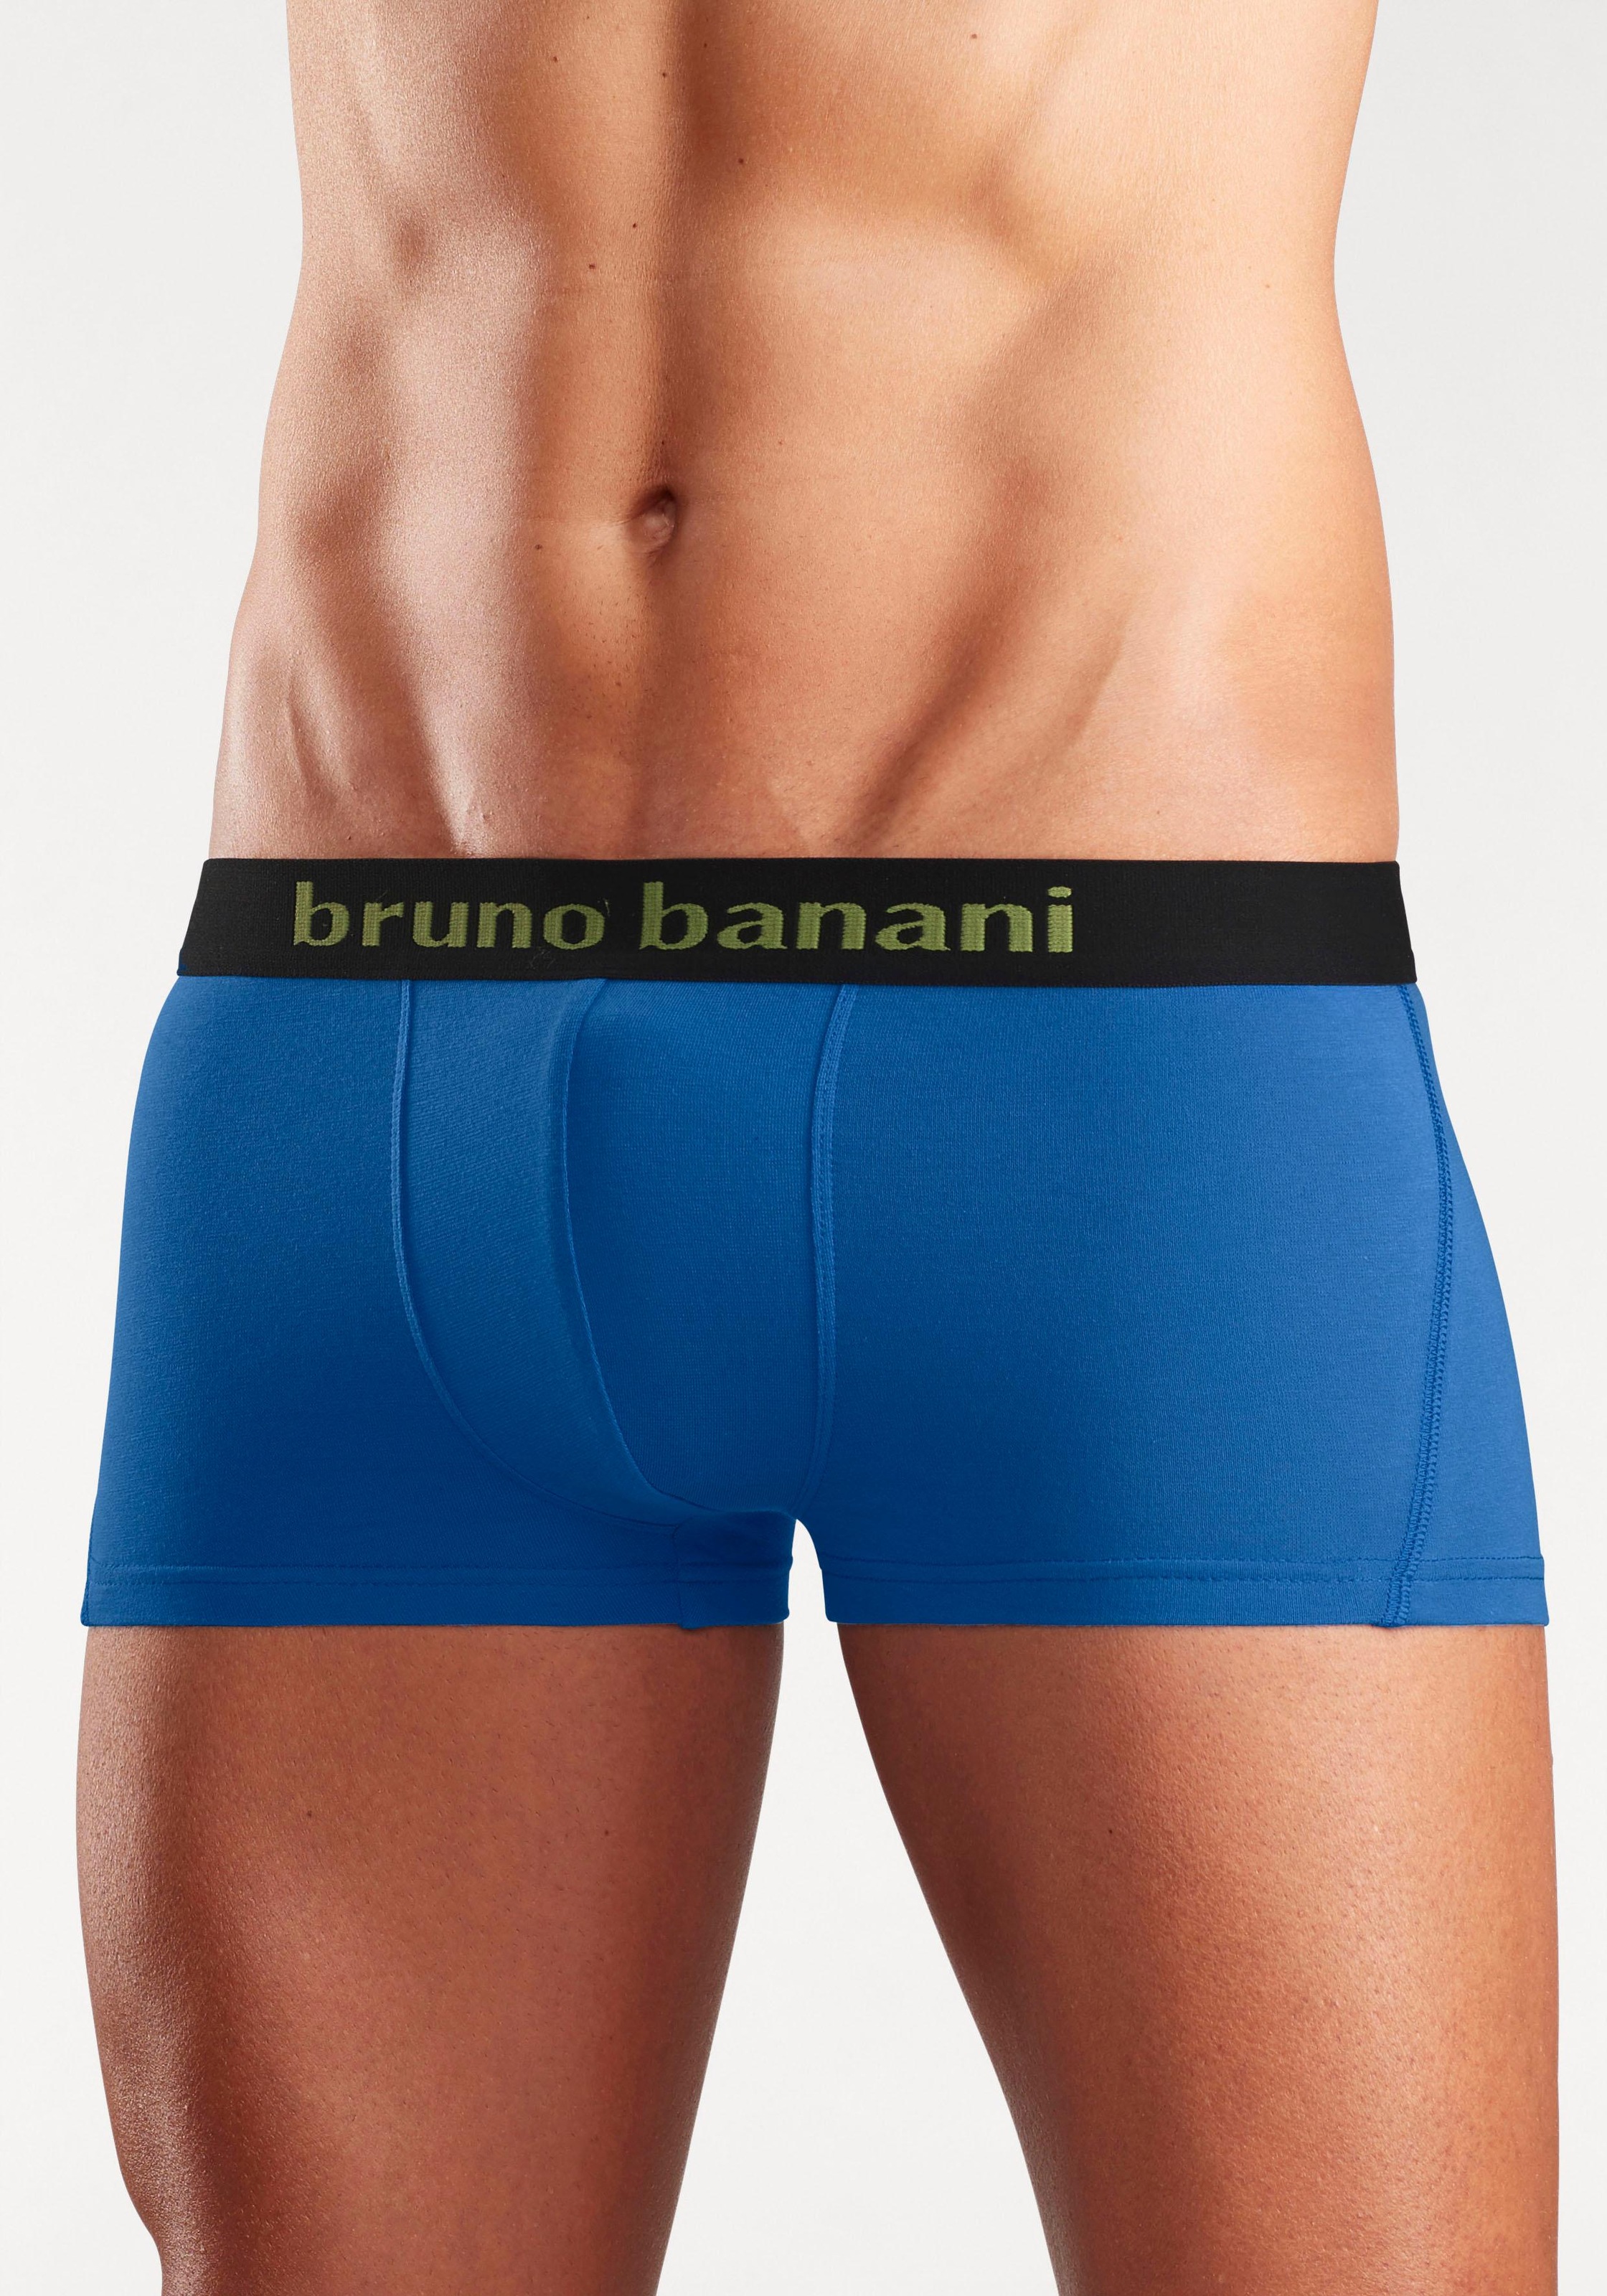 & 4 | (Packung, Lingerie mit kaufen » Boxershorts, Bademode, Logo Hipster-Form Webbund St.), in Unterwäsche Banani Bruno online LASCANA